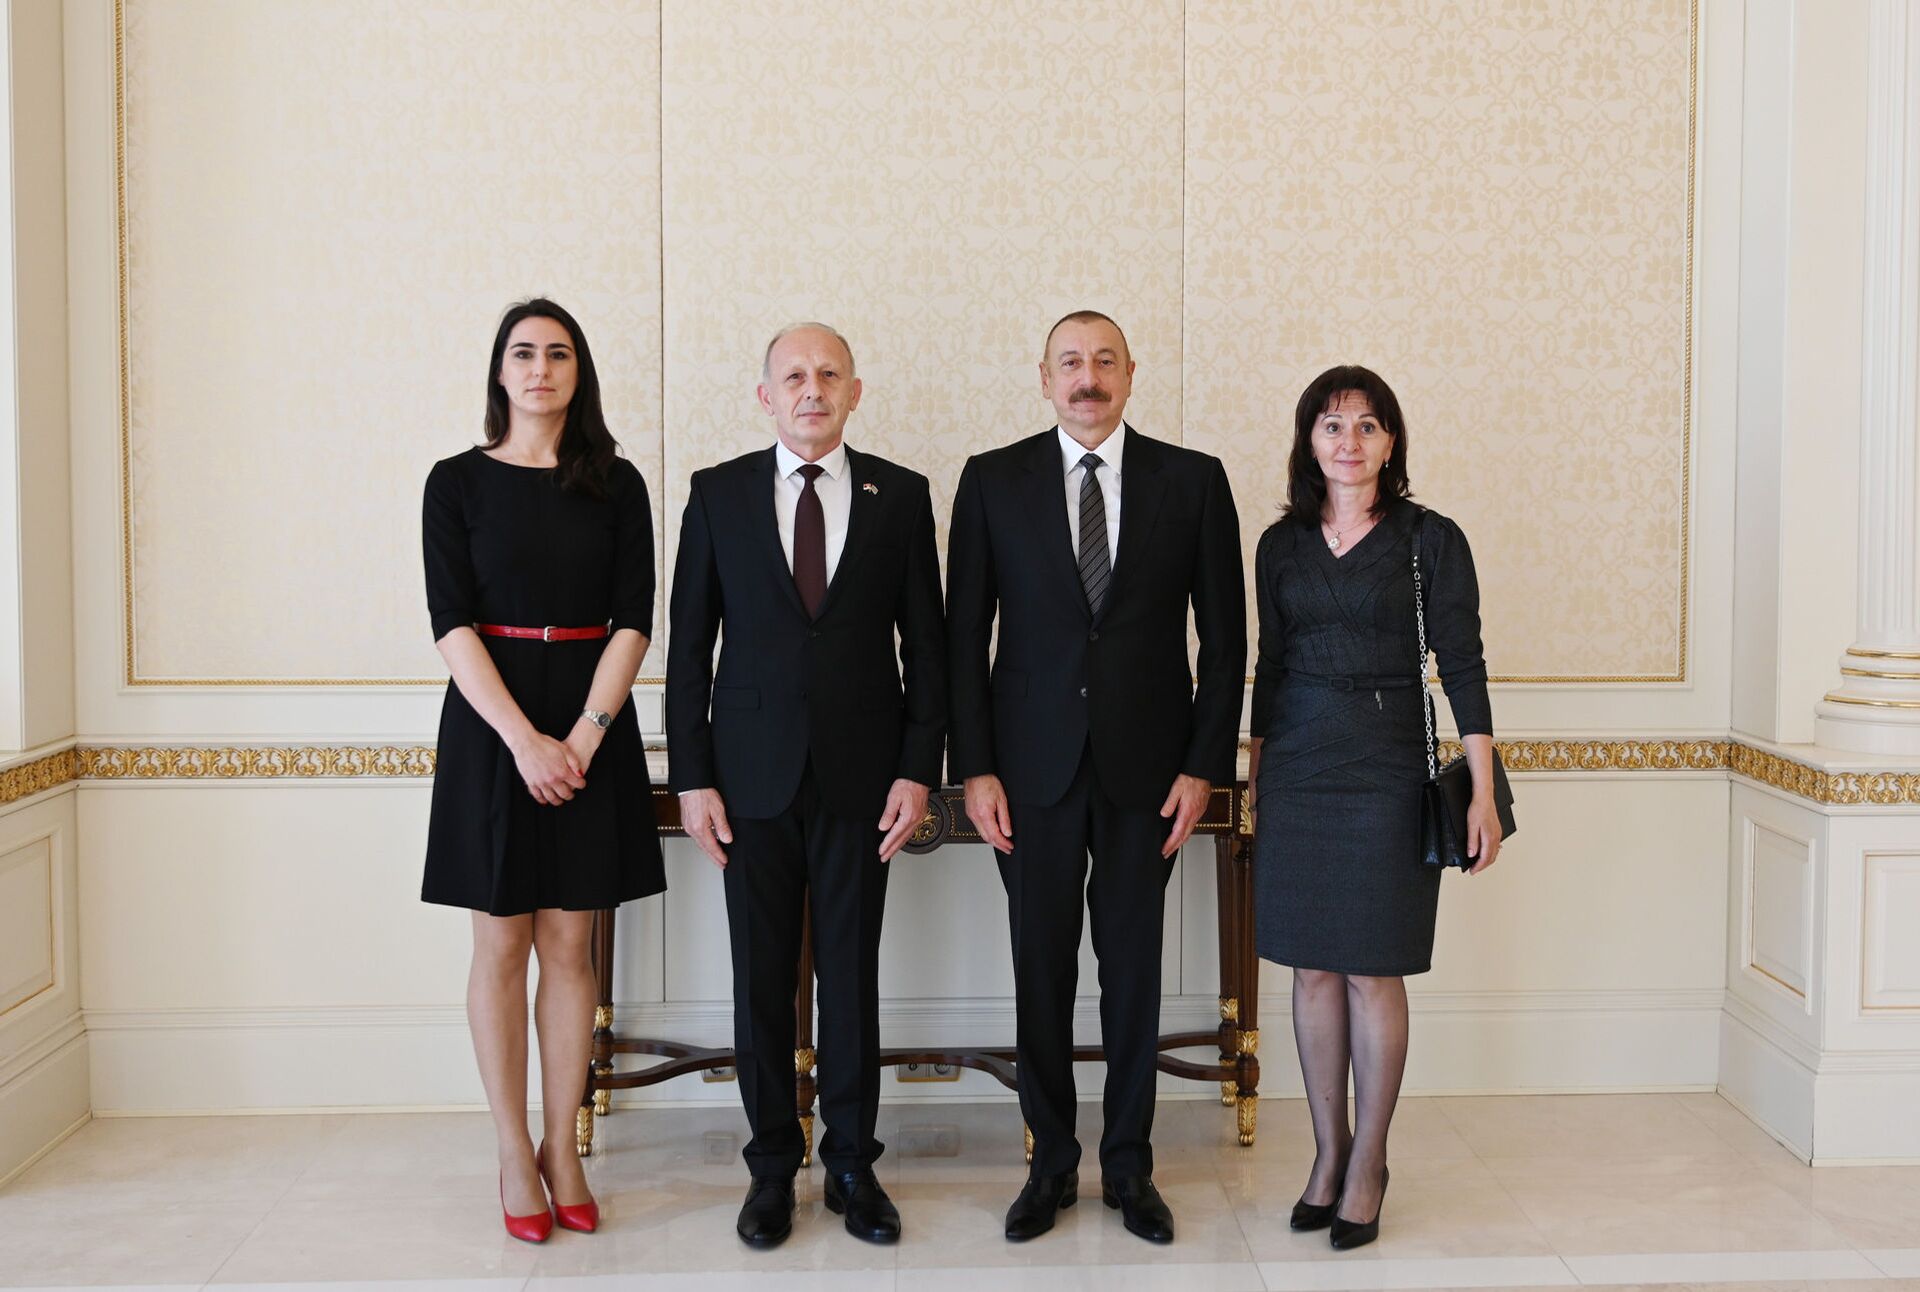 Президент Алиев принял новоназначенных послов Сербии и Турции - Sputnik Азербайджан, 1920, 03.05.2021